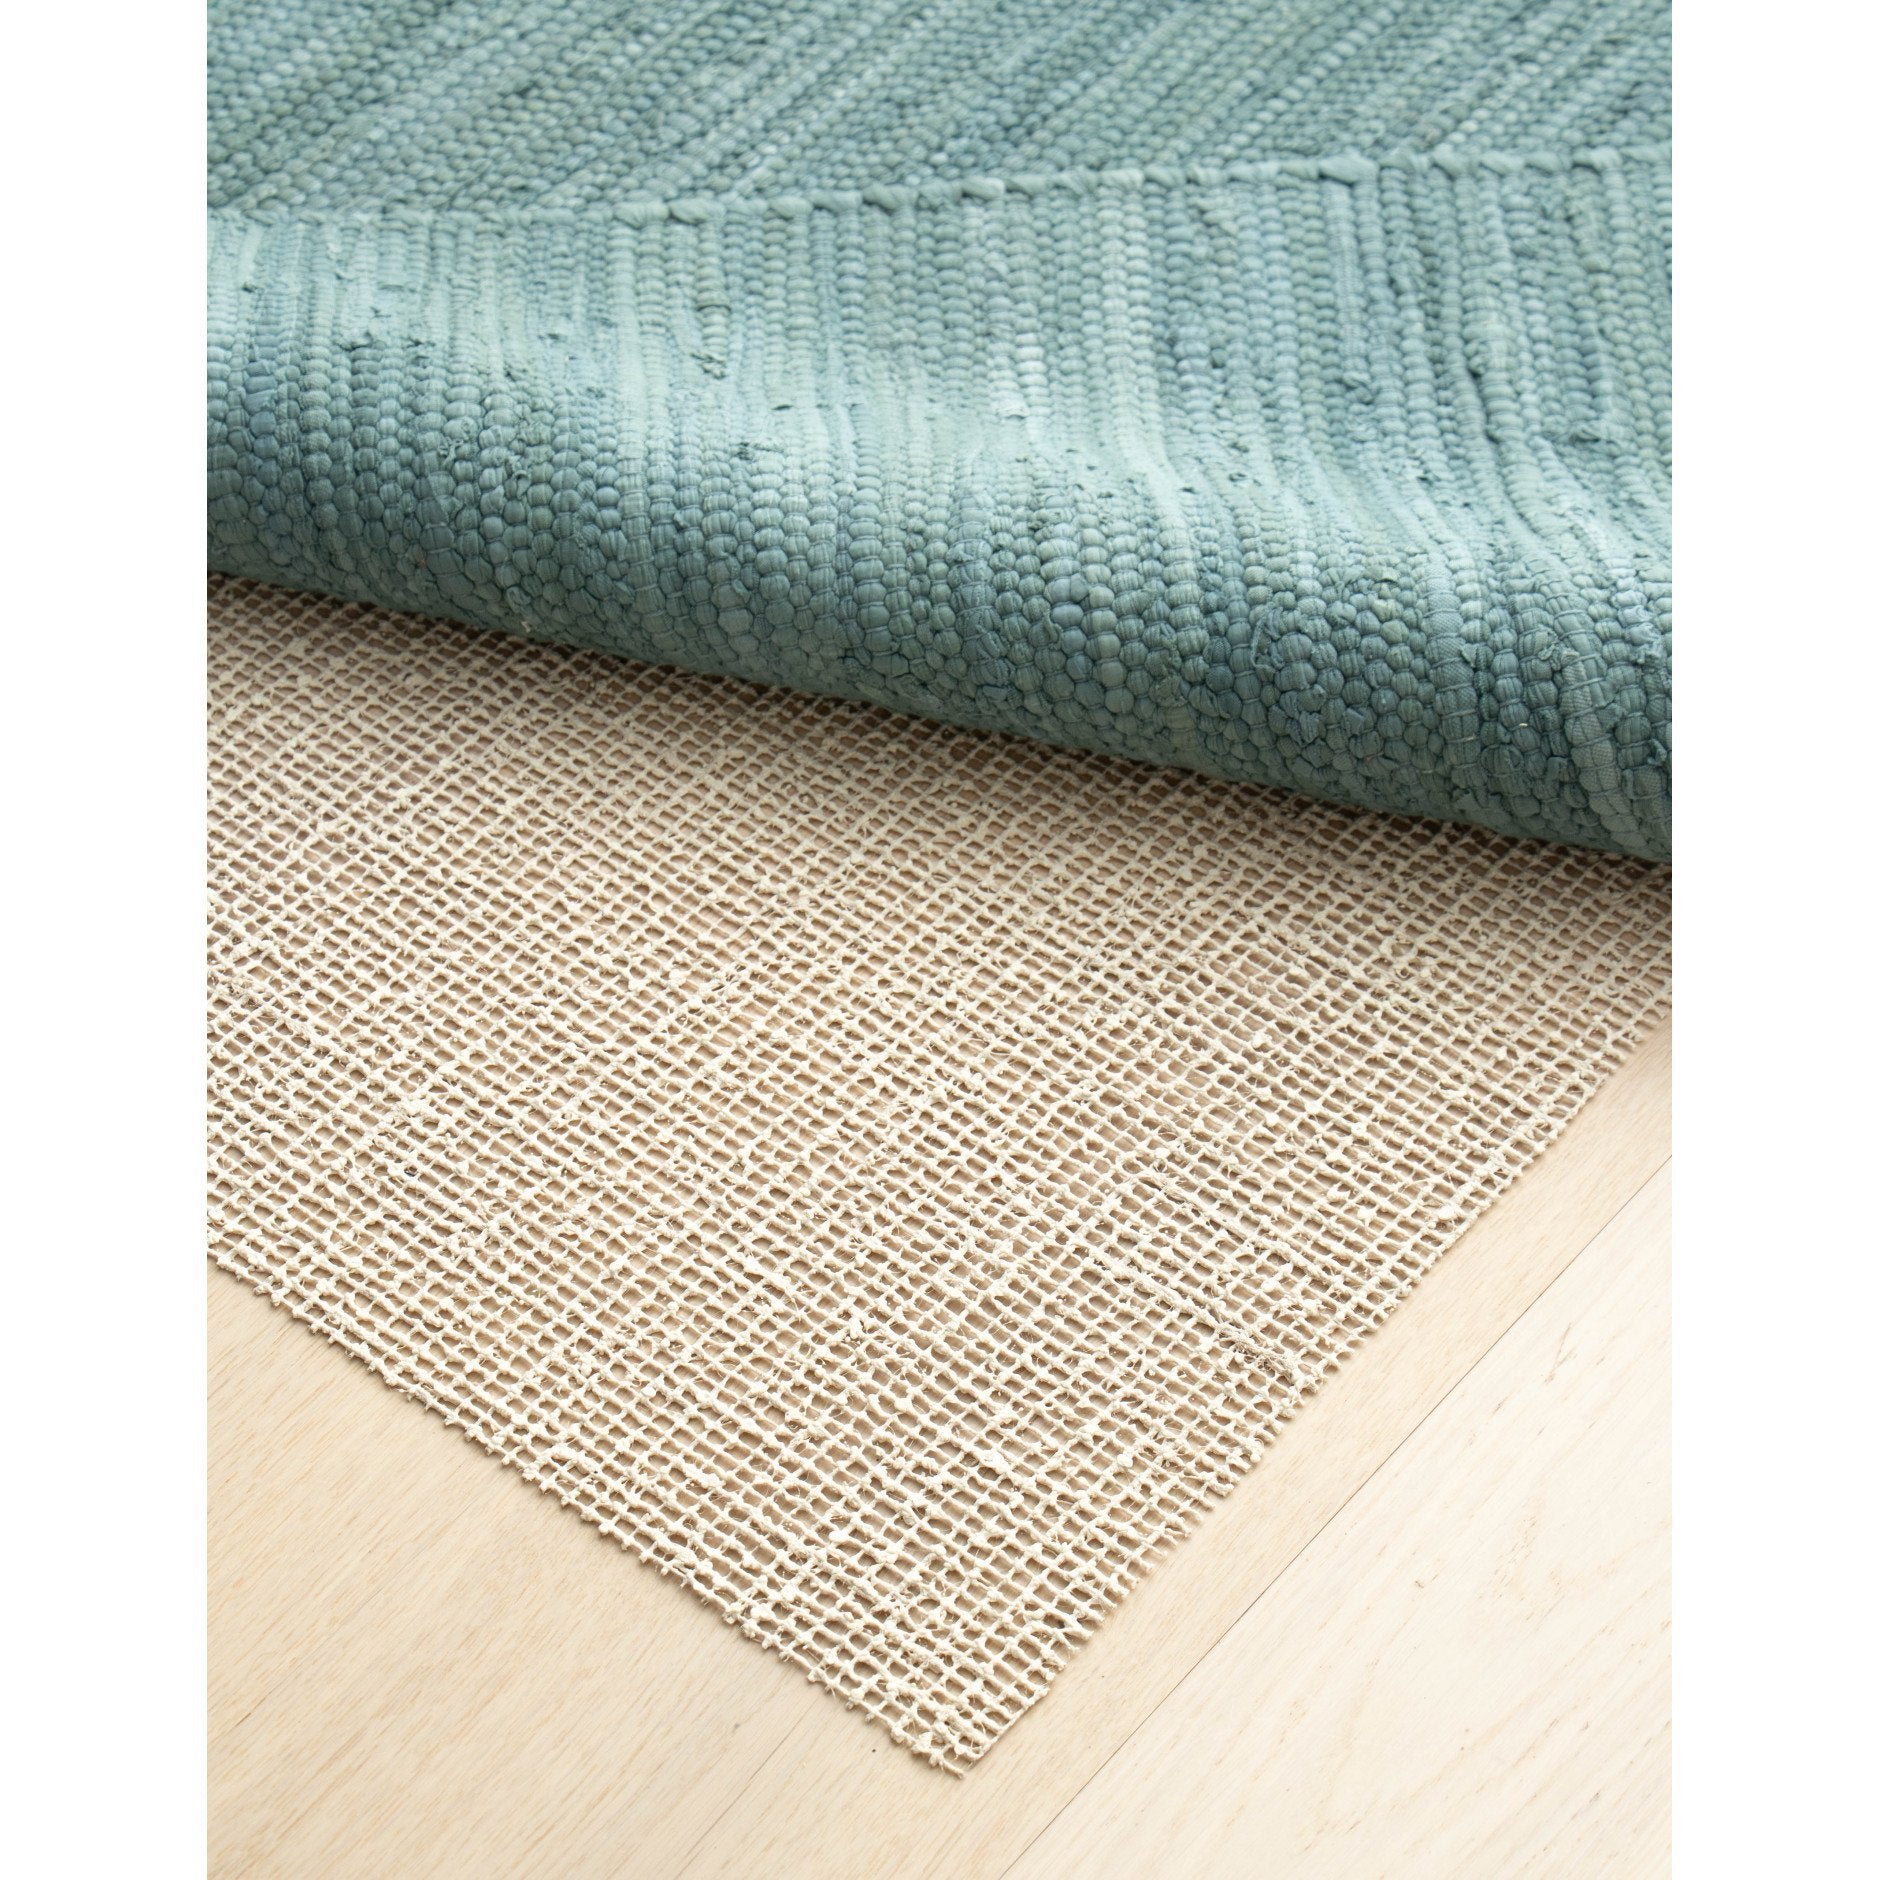 Tappeto in lattice organico e iuta organico del tappeto, 60 x 130 cm